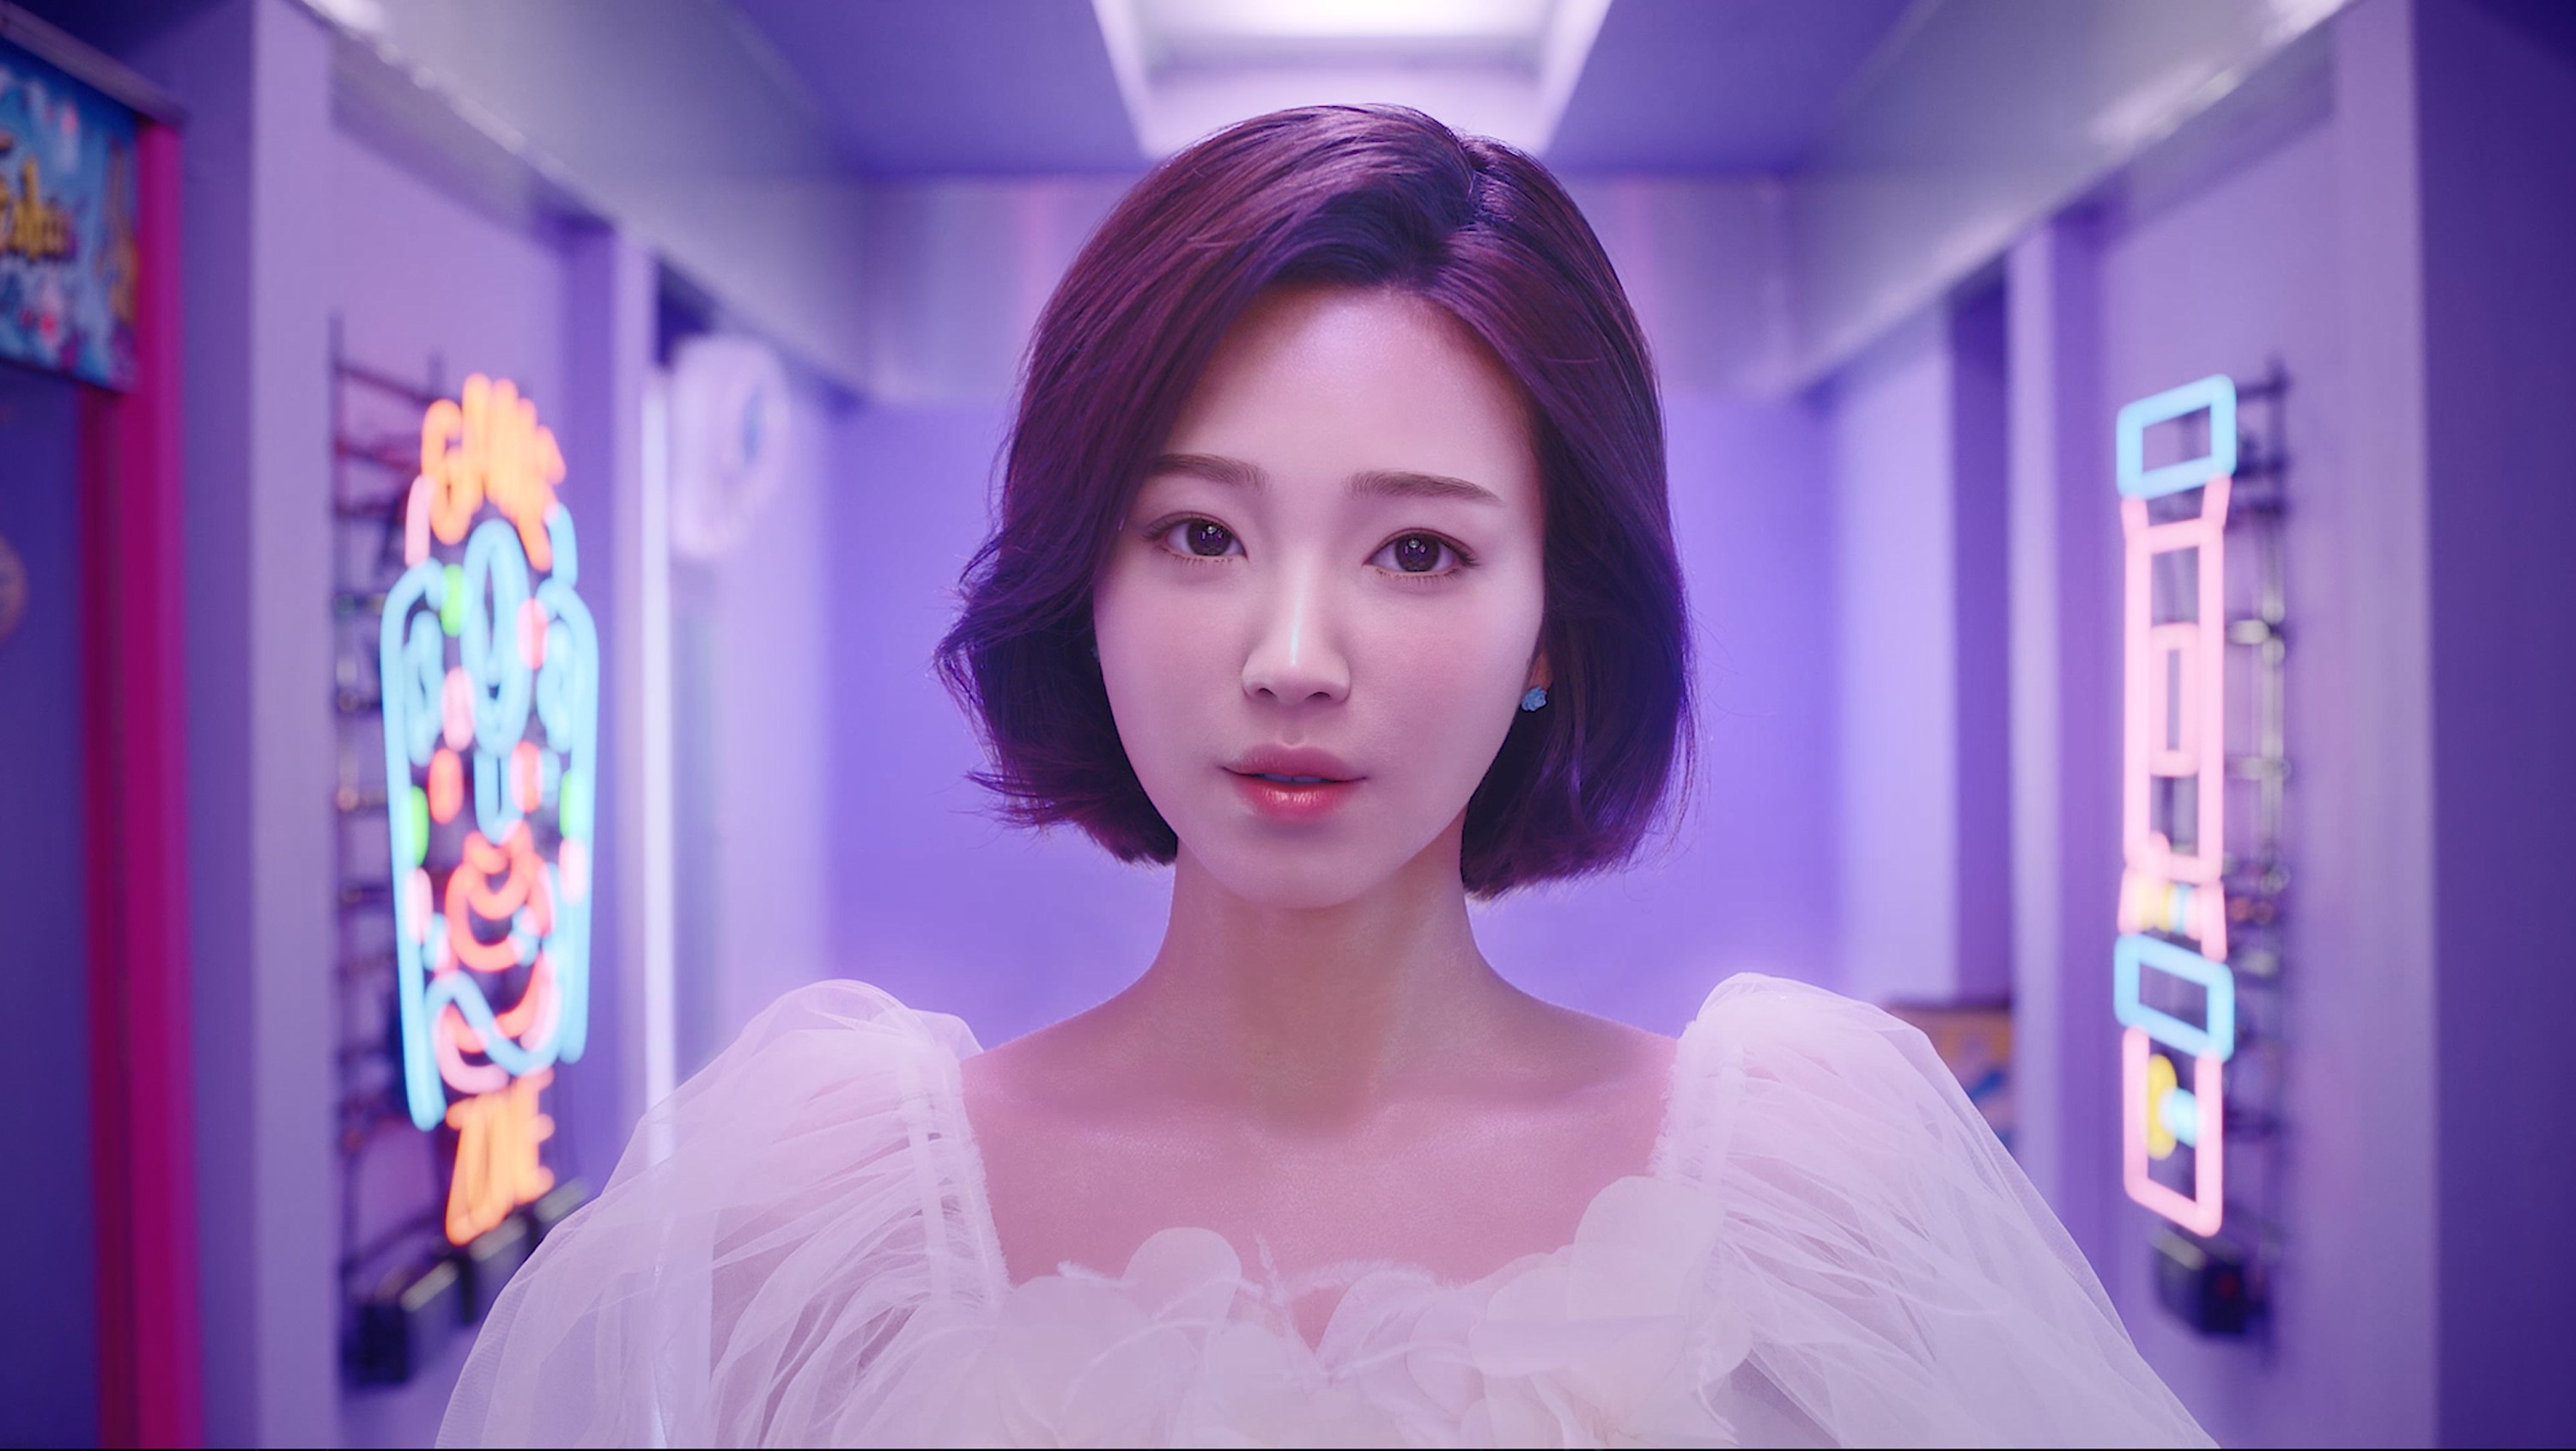 2019년 VR 게임 ‘포커스 온 유’에서 여자주인공 역을 맡으며 데뷔한 ‘버추얼 휴먼’ 한유아는 가수 데뷔를 앞두고 있다. CJ ENM 제공